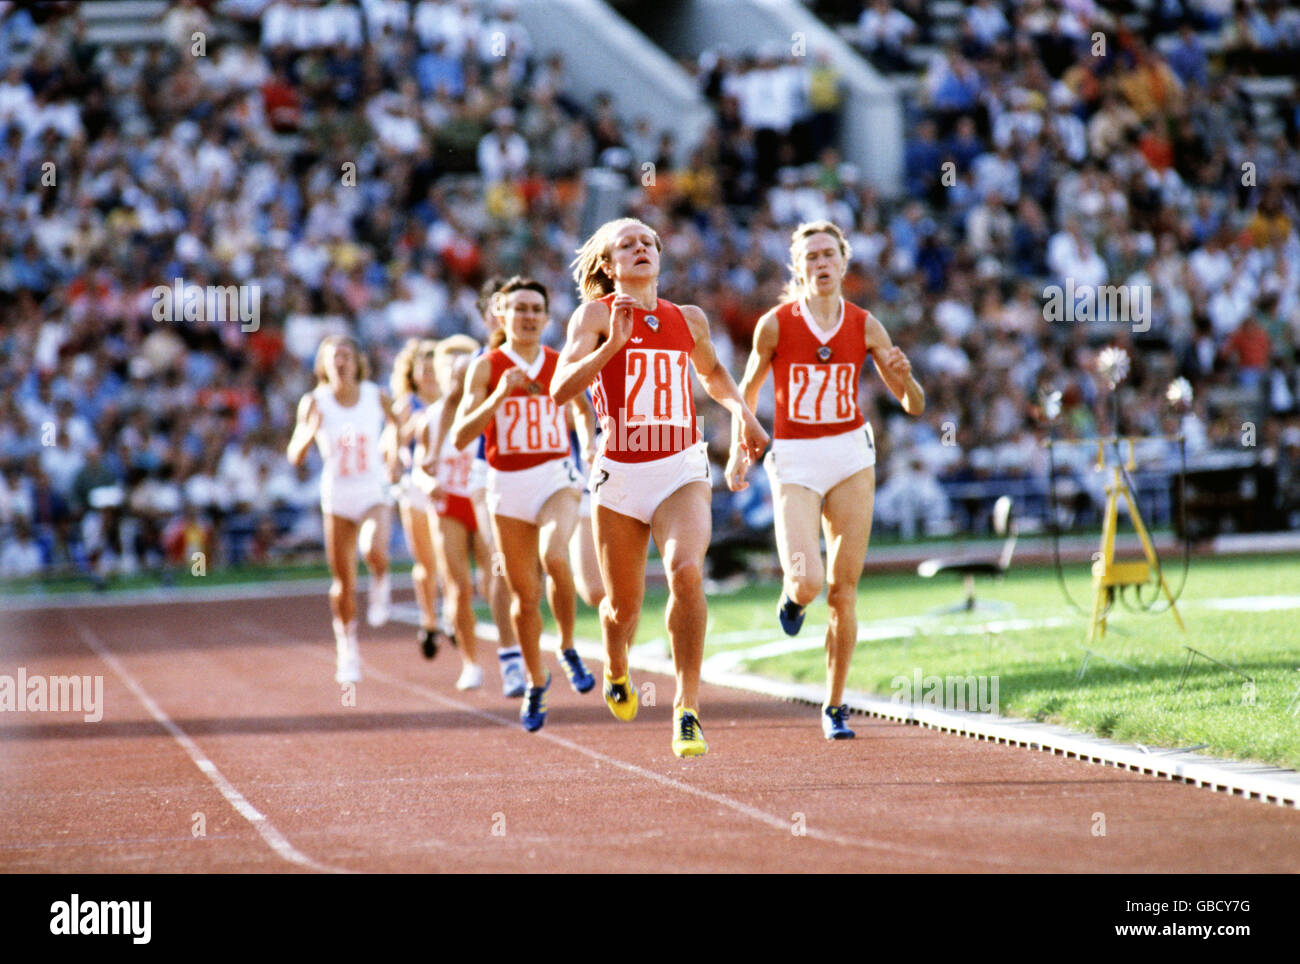 Athlétisme - Jeux Olympiques de Moscou 1980 - finale du 800m féminin.Nadyezda Olizarenko (281), de l'URSS, se lance en or dans un nouveau record du monde de 1min 53,43s Banque D'Images